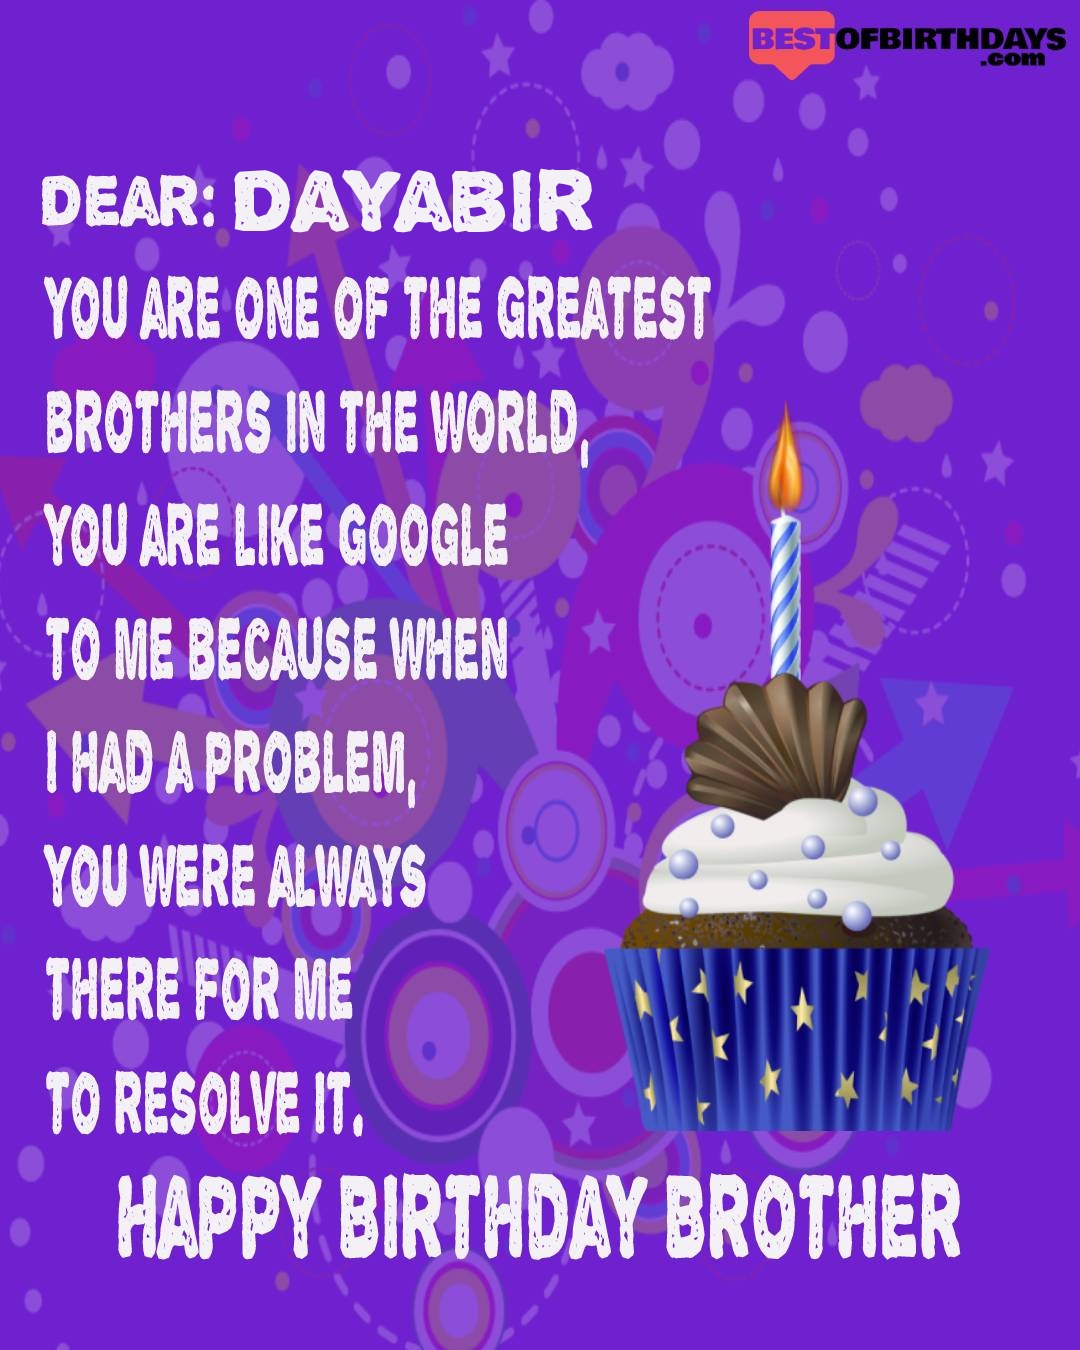 Happy birthday dayabir bhai brother bro